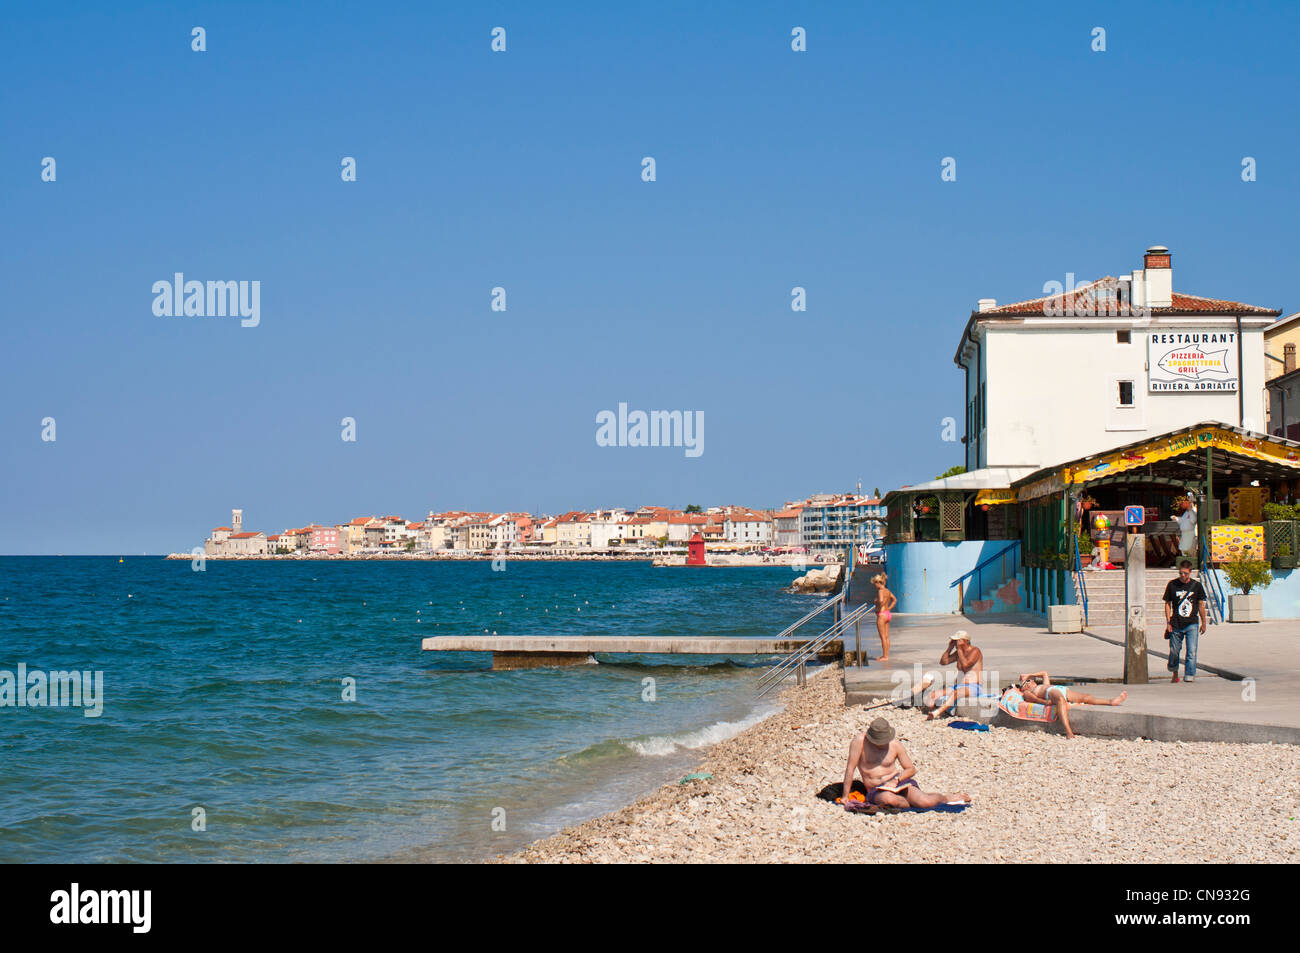 Slowenien, Golf von Triest, Adria-Küste, Primorska Region, Piran, Strand am  Eingang der Stadt Stockfotografie - Alamy